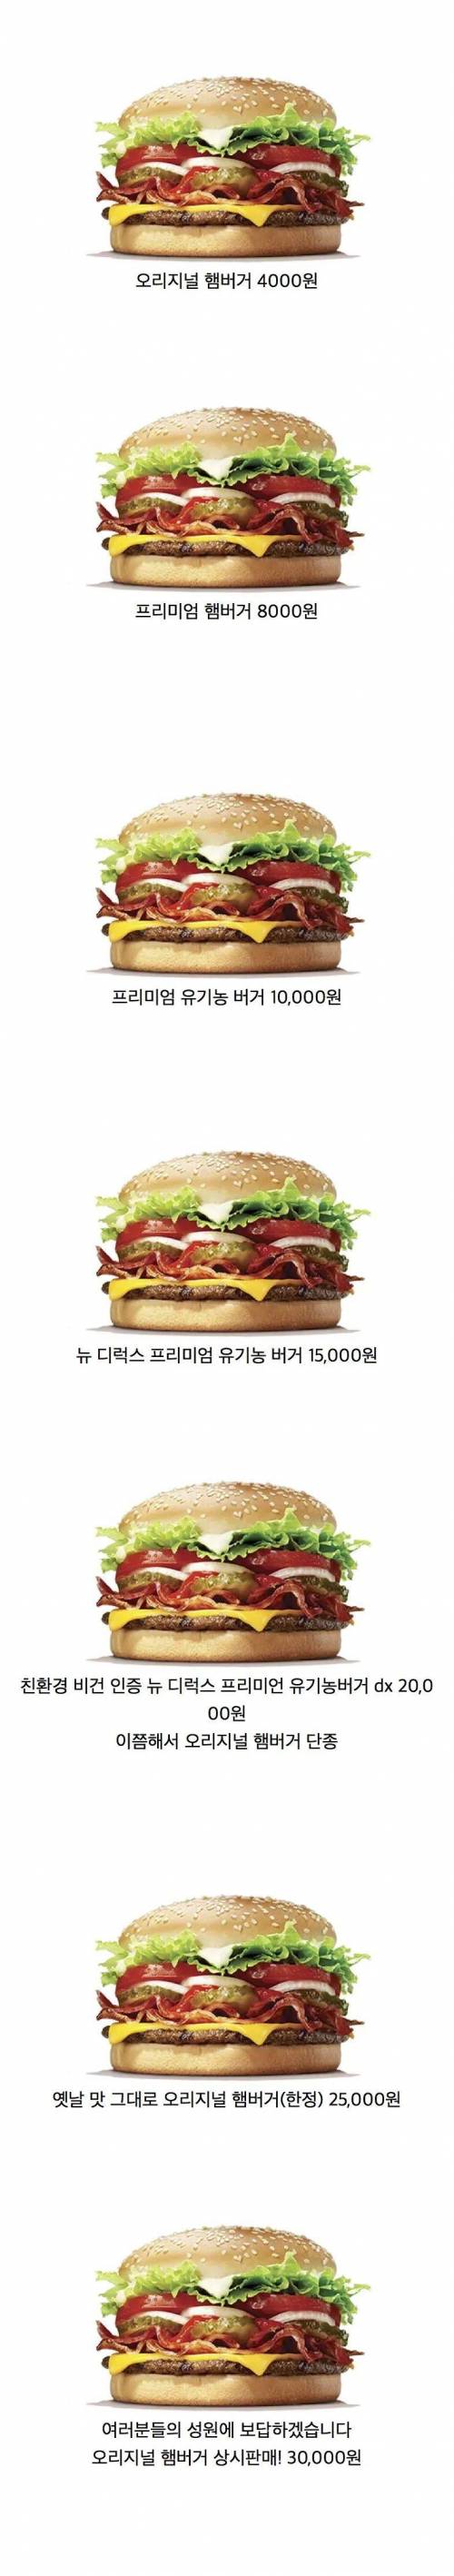 한국에서 햄버거 파는 법